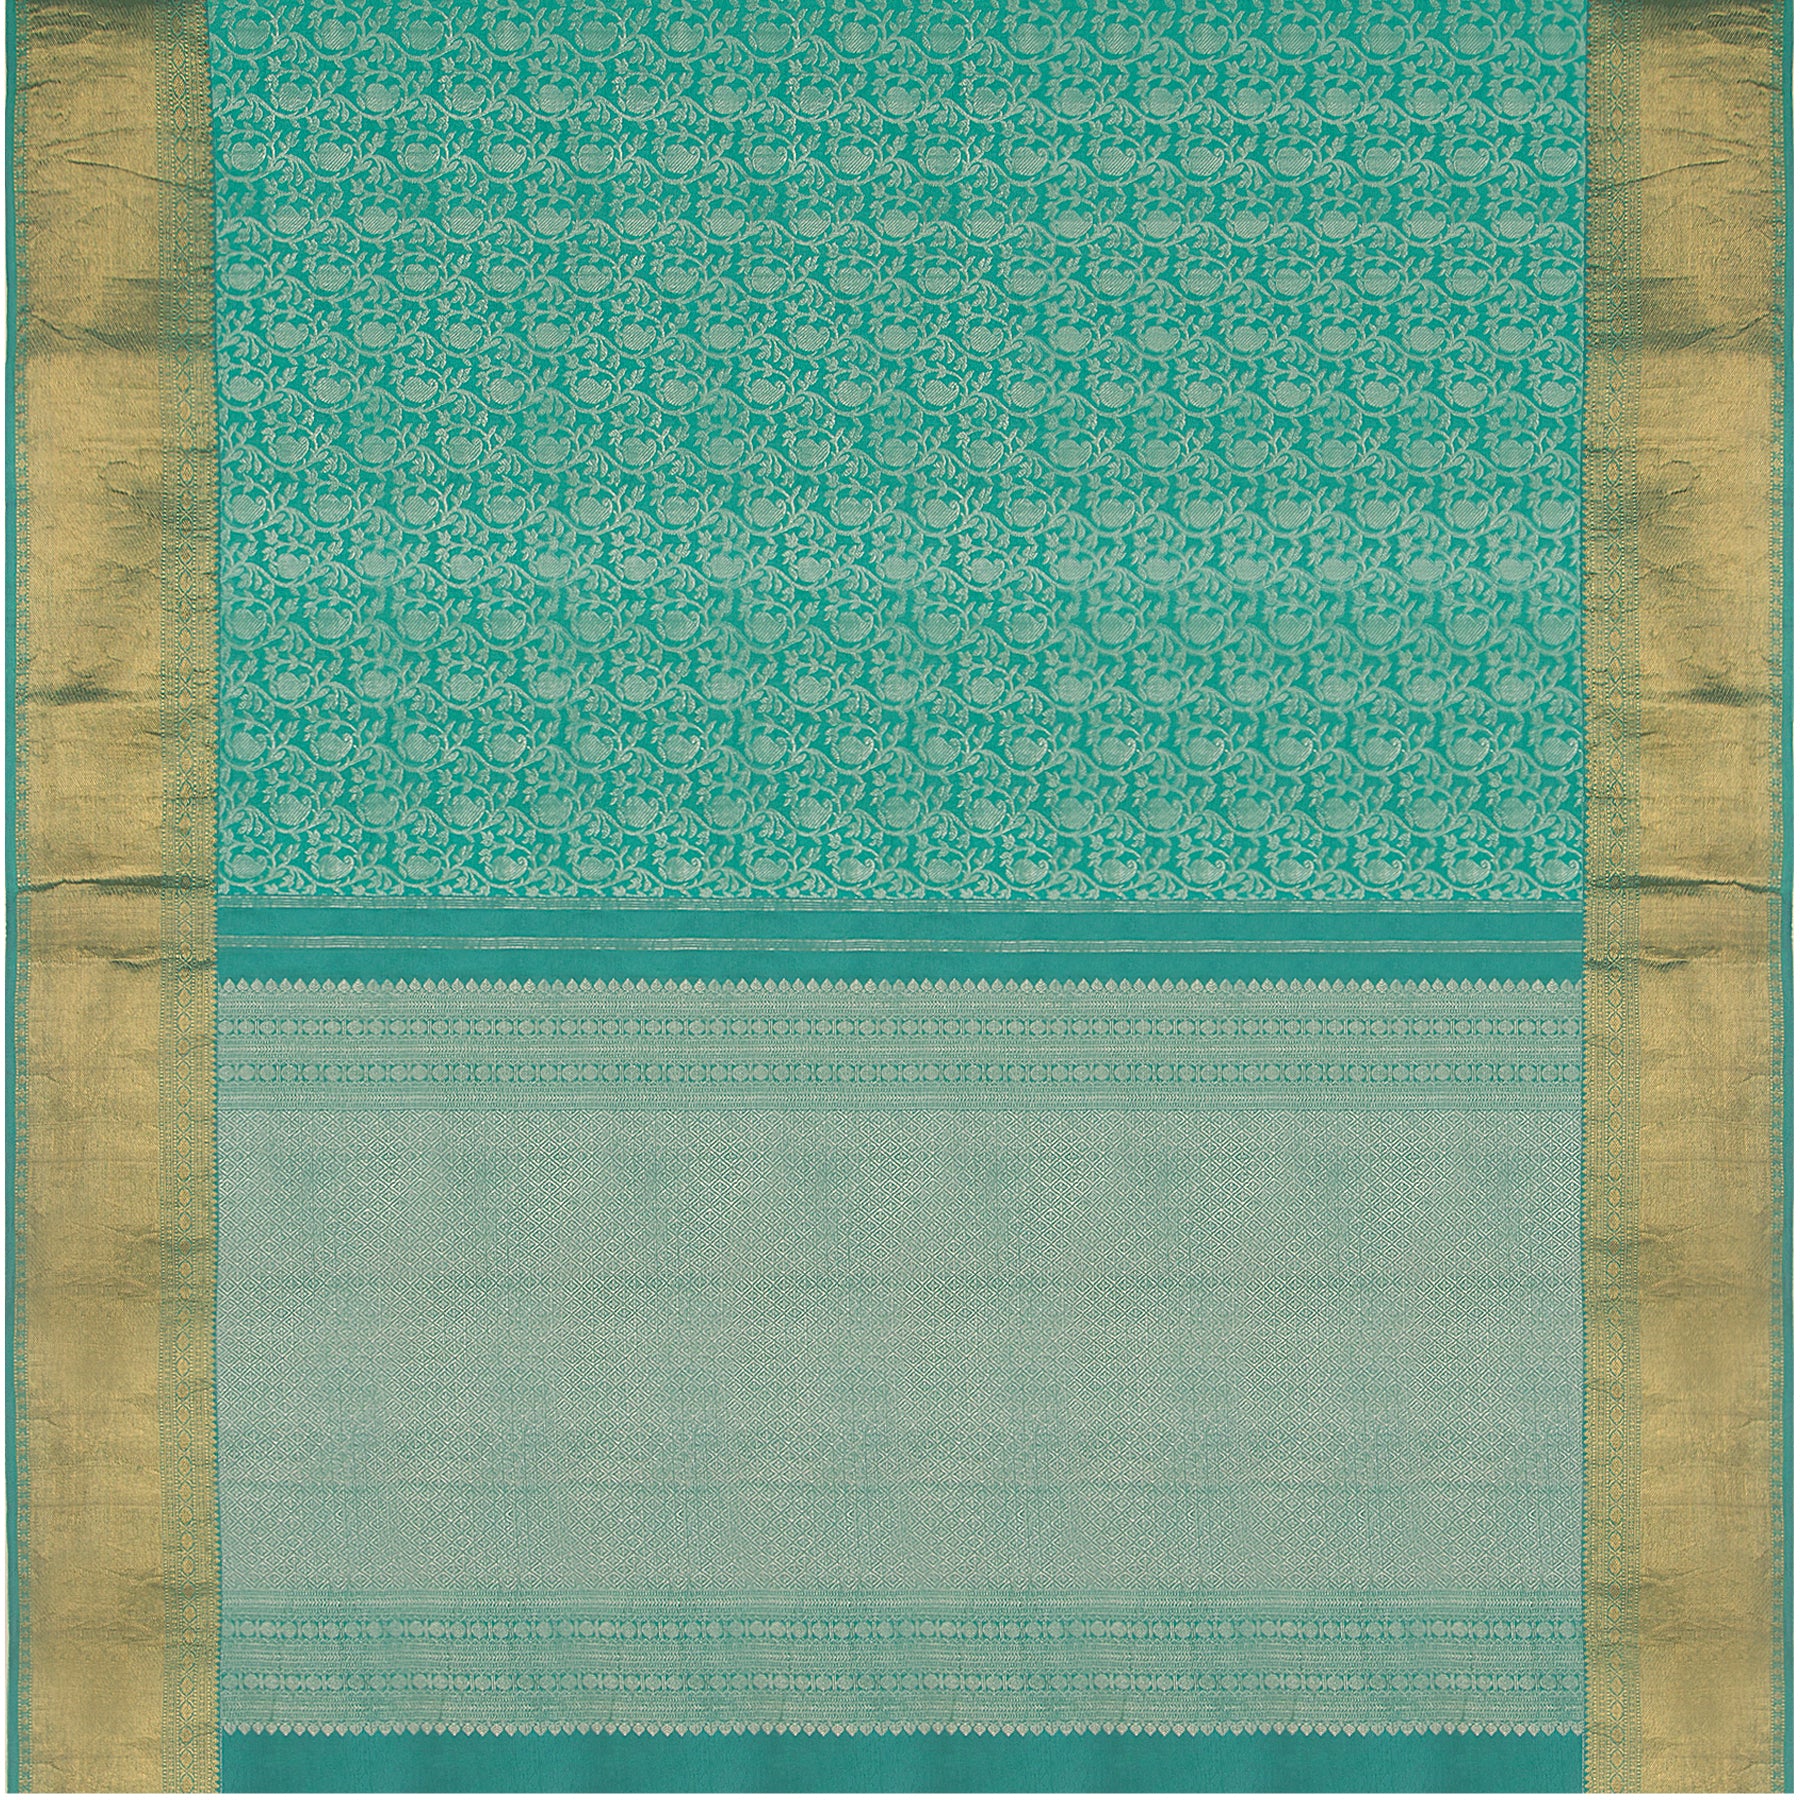 Kanakavalli Kanjivaram Silk Sari 21-586-HS001-07166 - Full View